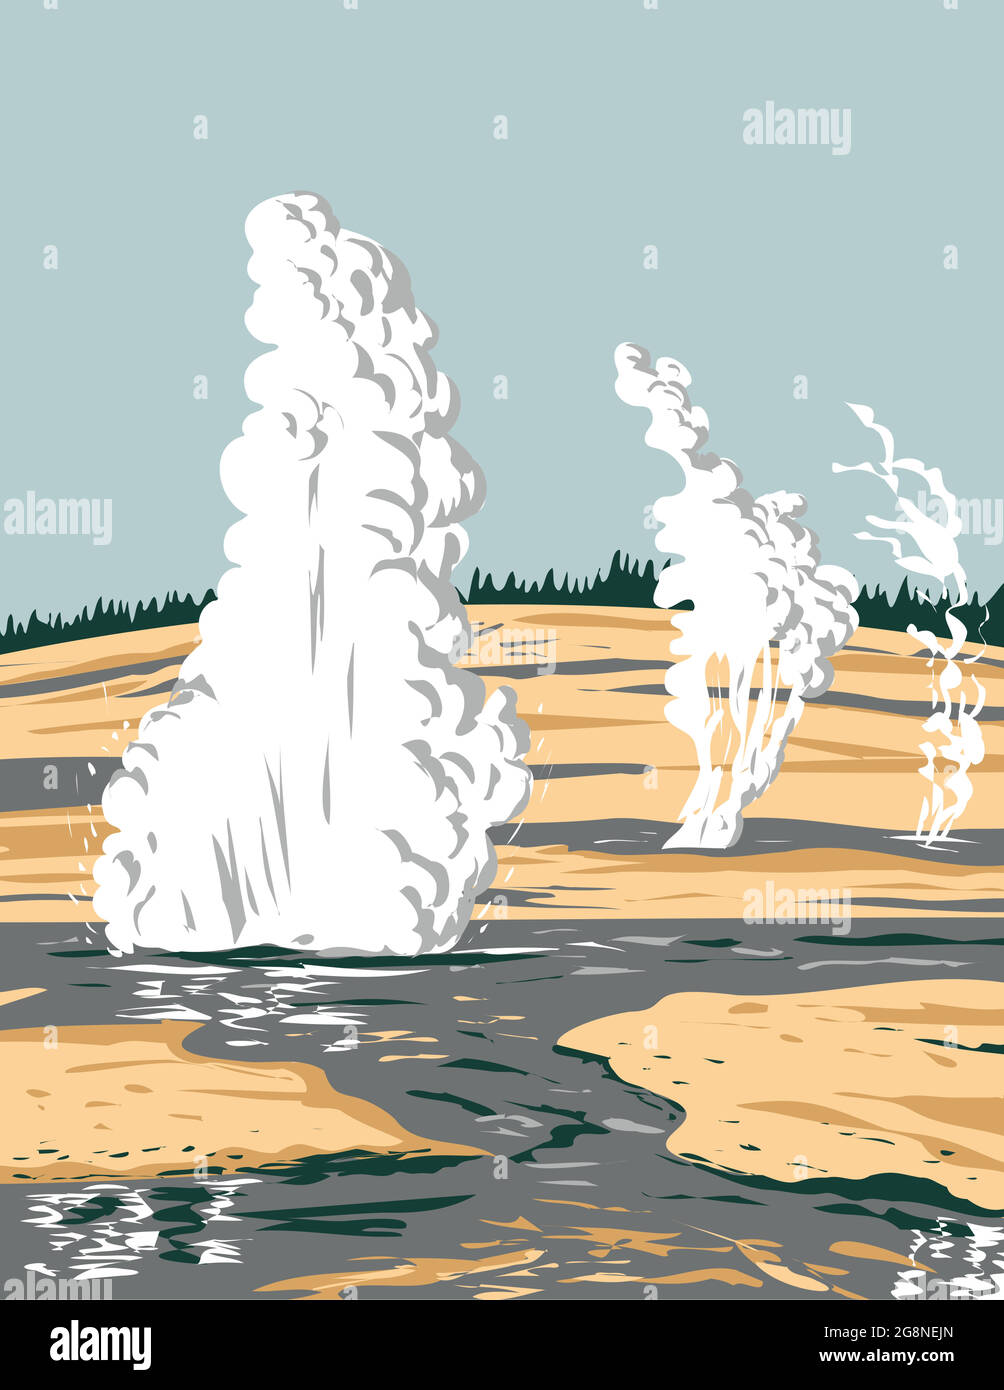 L'art de l'affiche WPA du bassin de Norris Geyser le plus chaud, le plus ancien et le plus dynamique des zones thermales ou géothermiques de Yellowstone dans le parc national de Yellowstone W Illustration de Vecteur